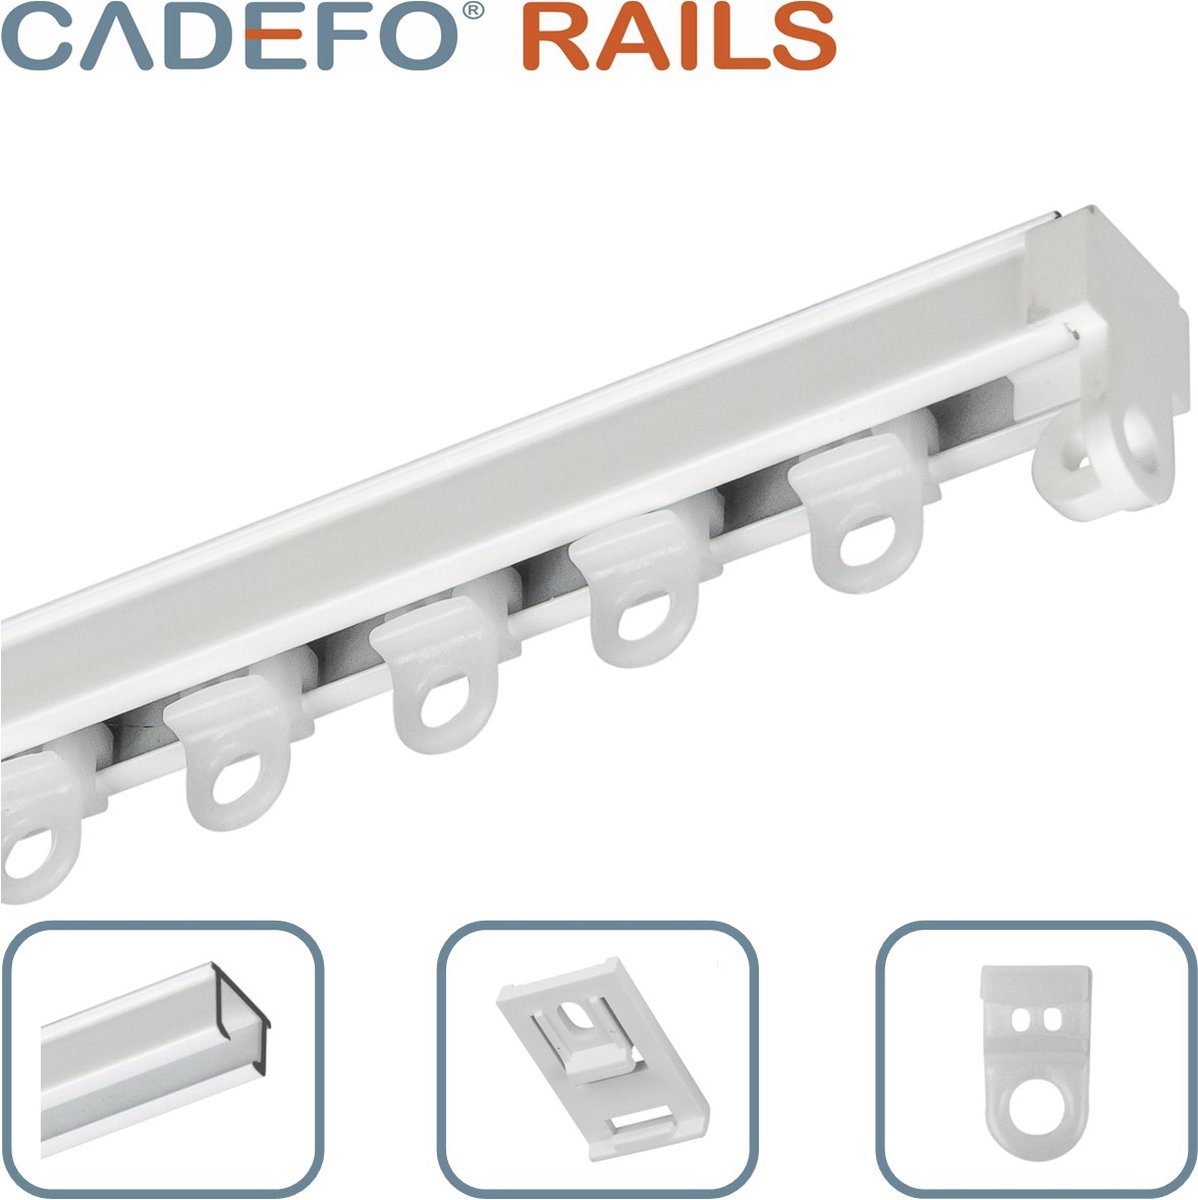 CADEFO RAILS (351 - 400 cm) Gordijnrails - Compleet op maat! - UIT 1 STUK - Leverbaar tot 6 meter - Plafondbevestiging - Lengte 383 cm